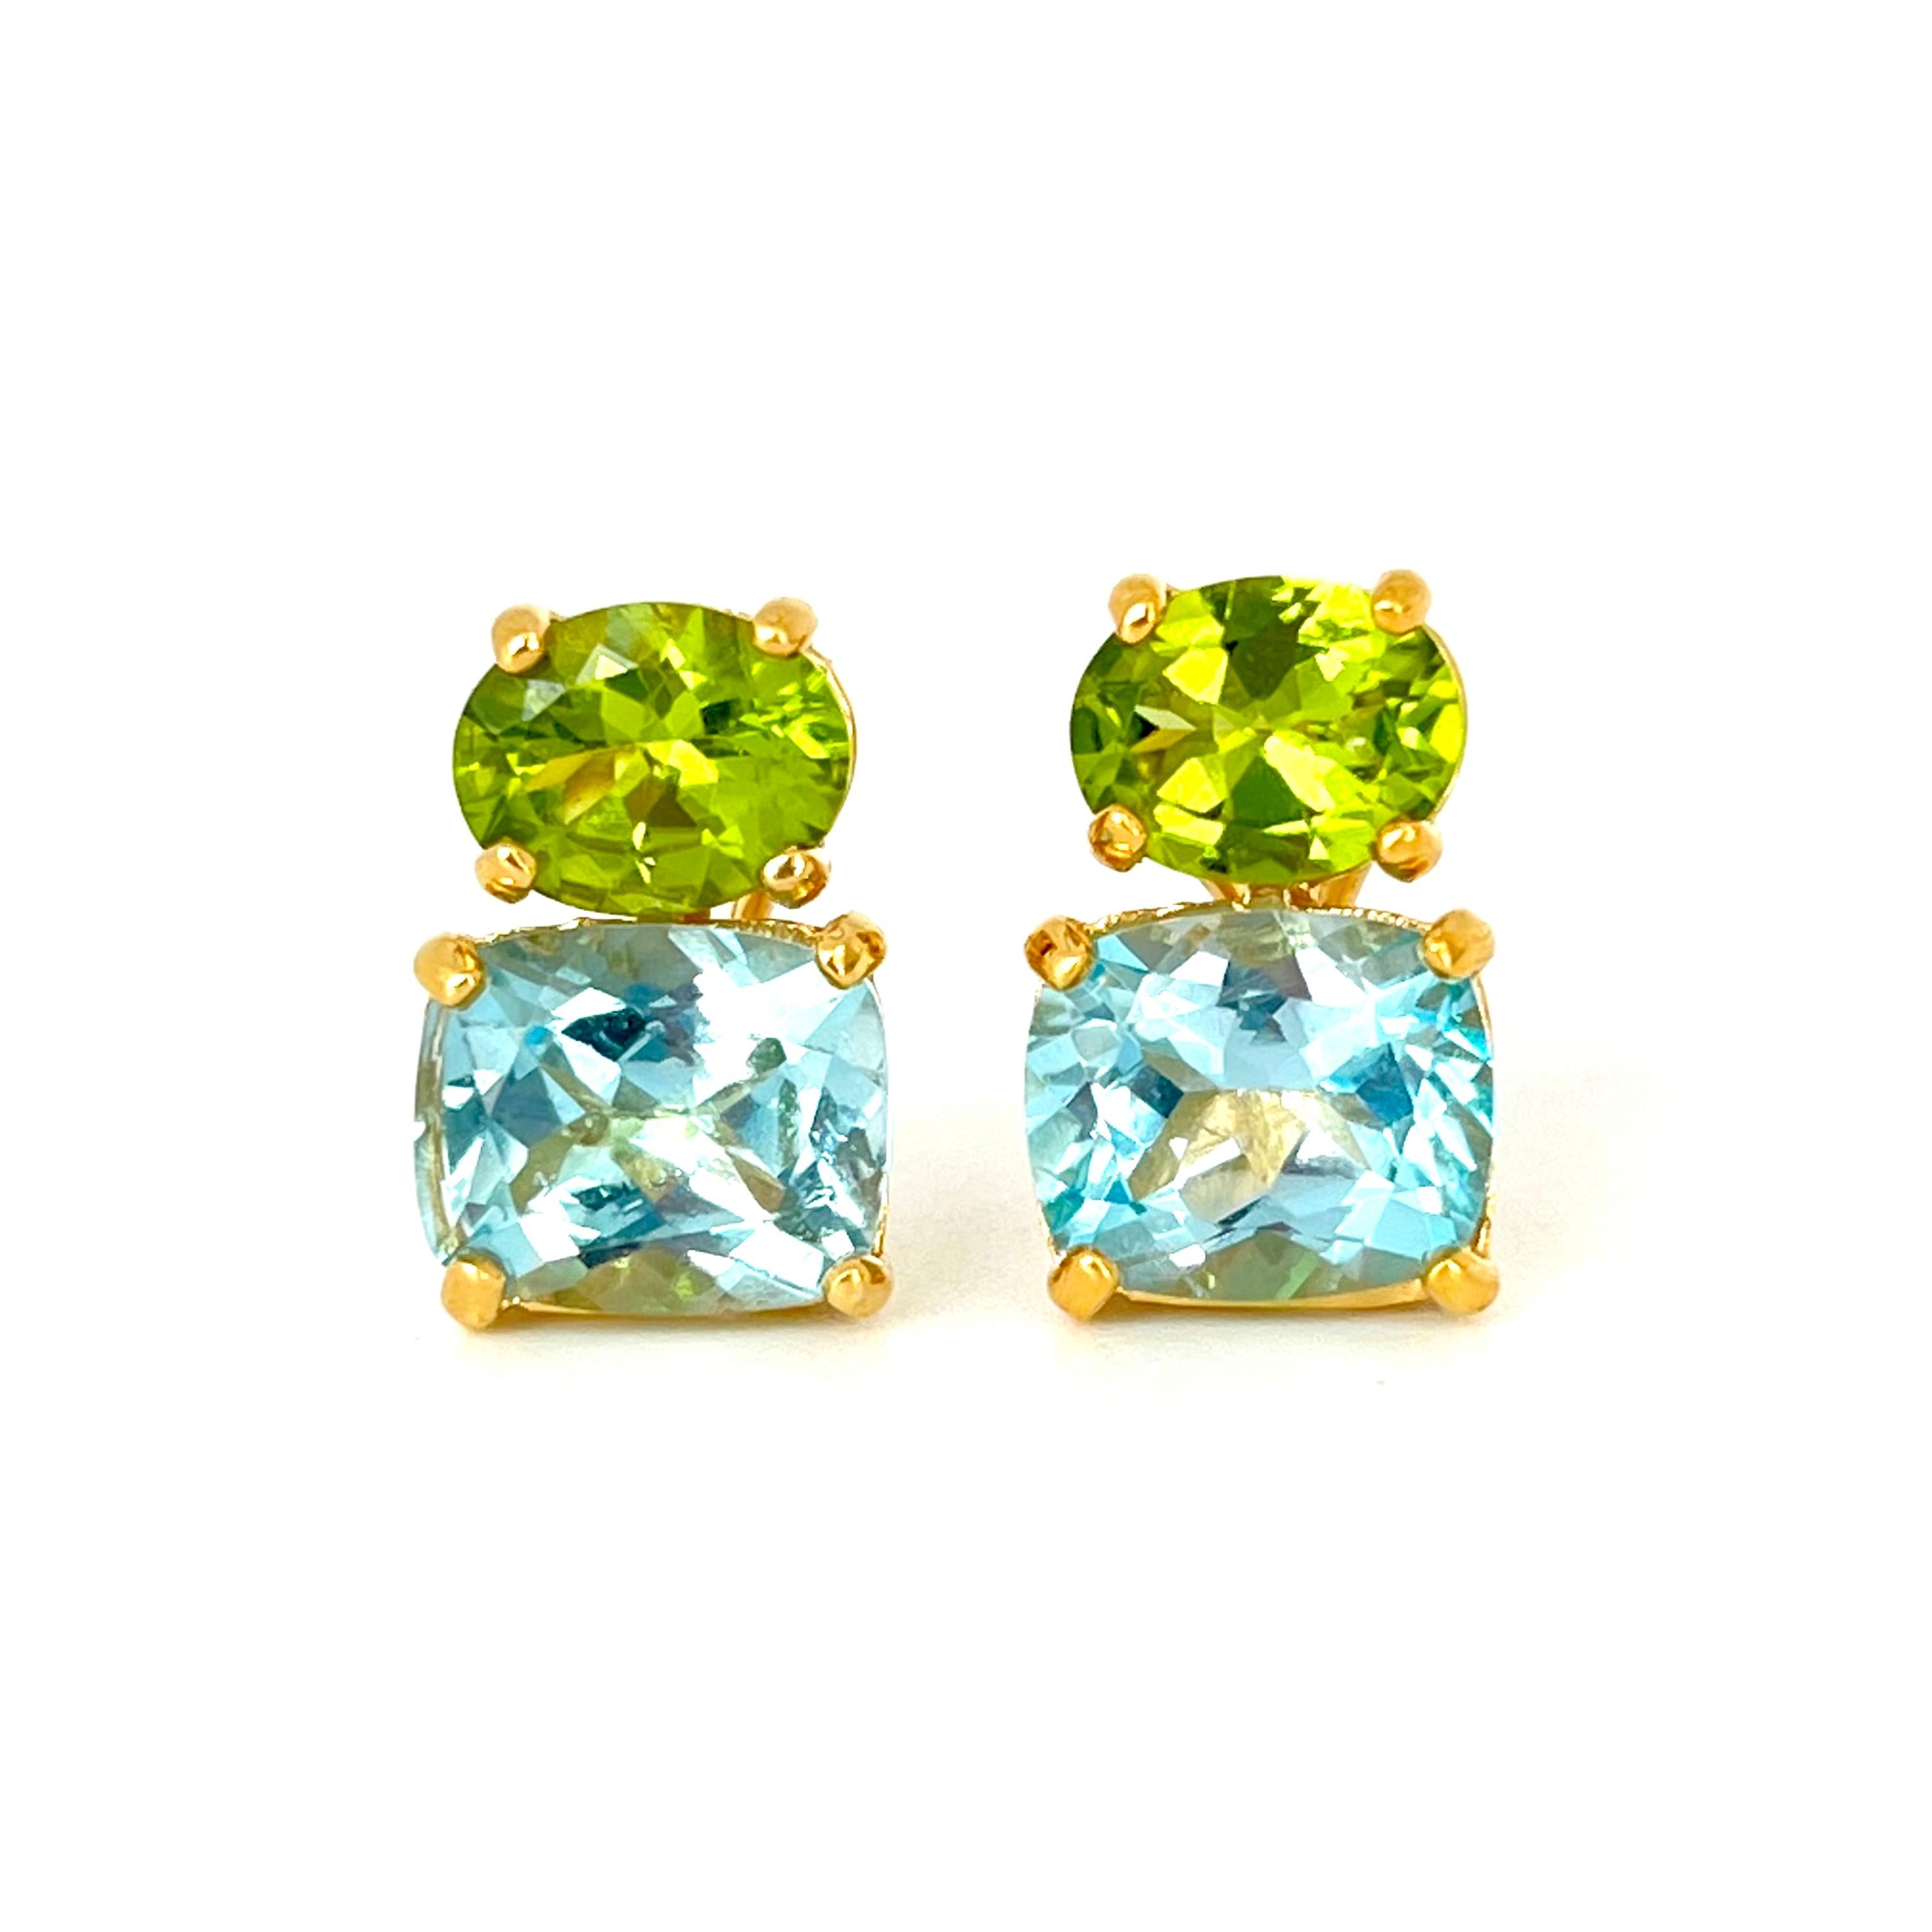 Dieses atemberaubende Paar Ohrringe besteht aus einem Paar echter ovaler grüner Peridote und himmelblauer Topase im Kissenschliff, die in 18k Gelbgold Vermeil über Sterlingsilber gefasst sind. Die Kombination aus Grün und Blau sieht einfach toll